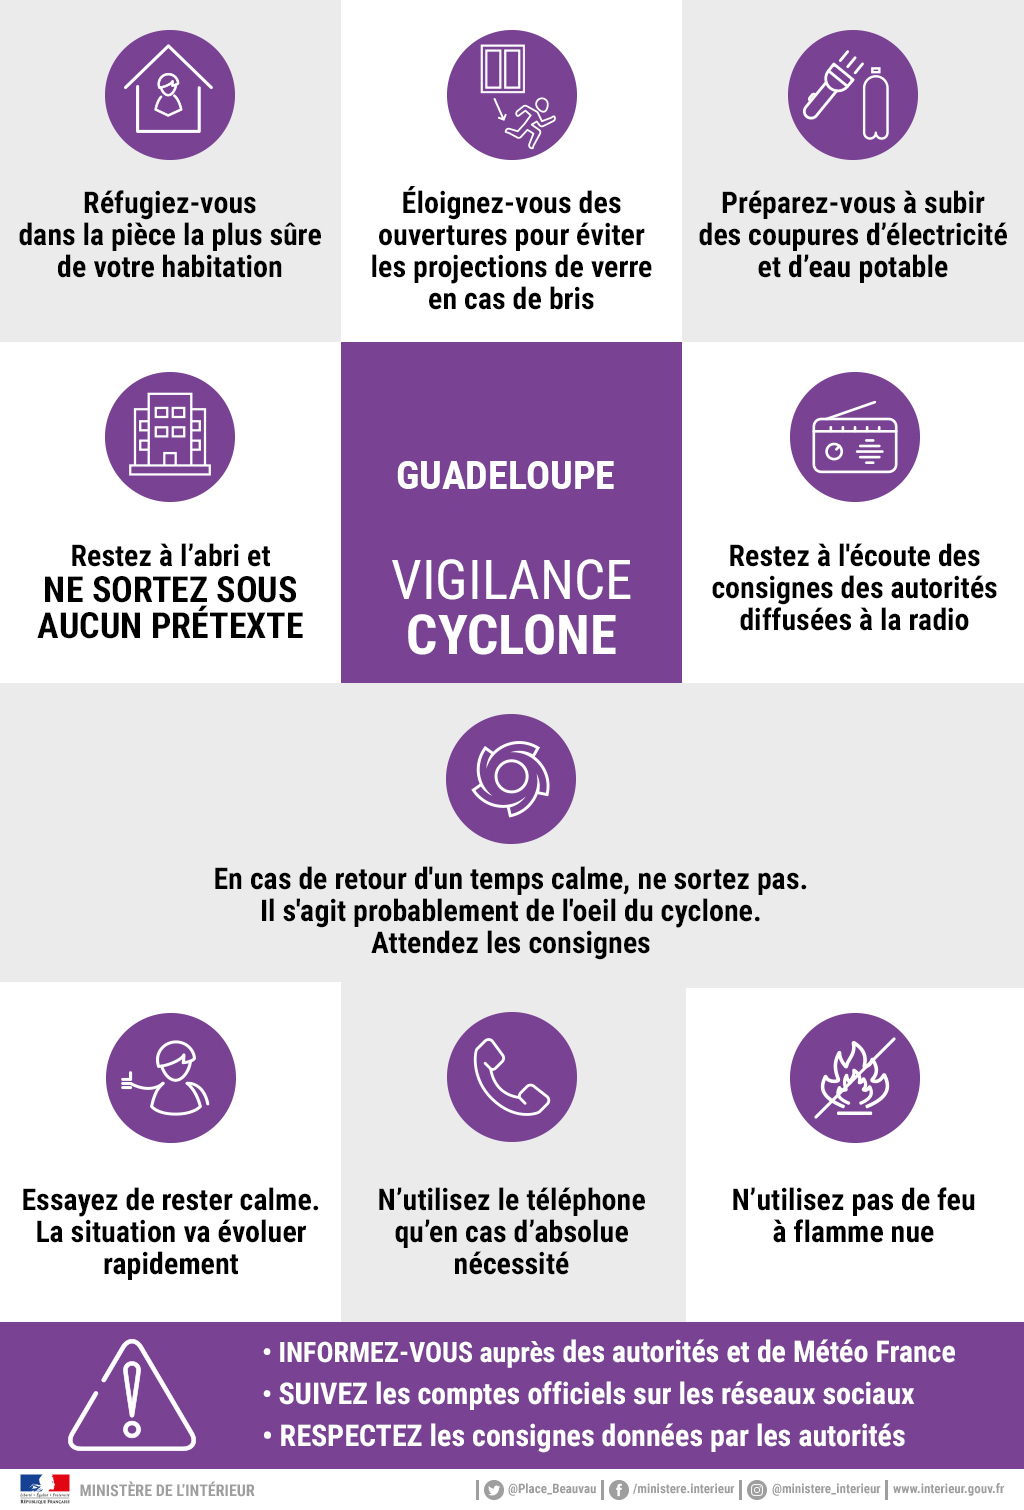 Le 19 septembre 2017 matin, la Guadeloupe est placée en vigilance violet - image : ministère de l'intérieur